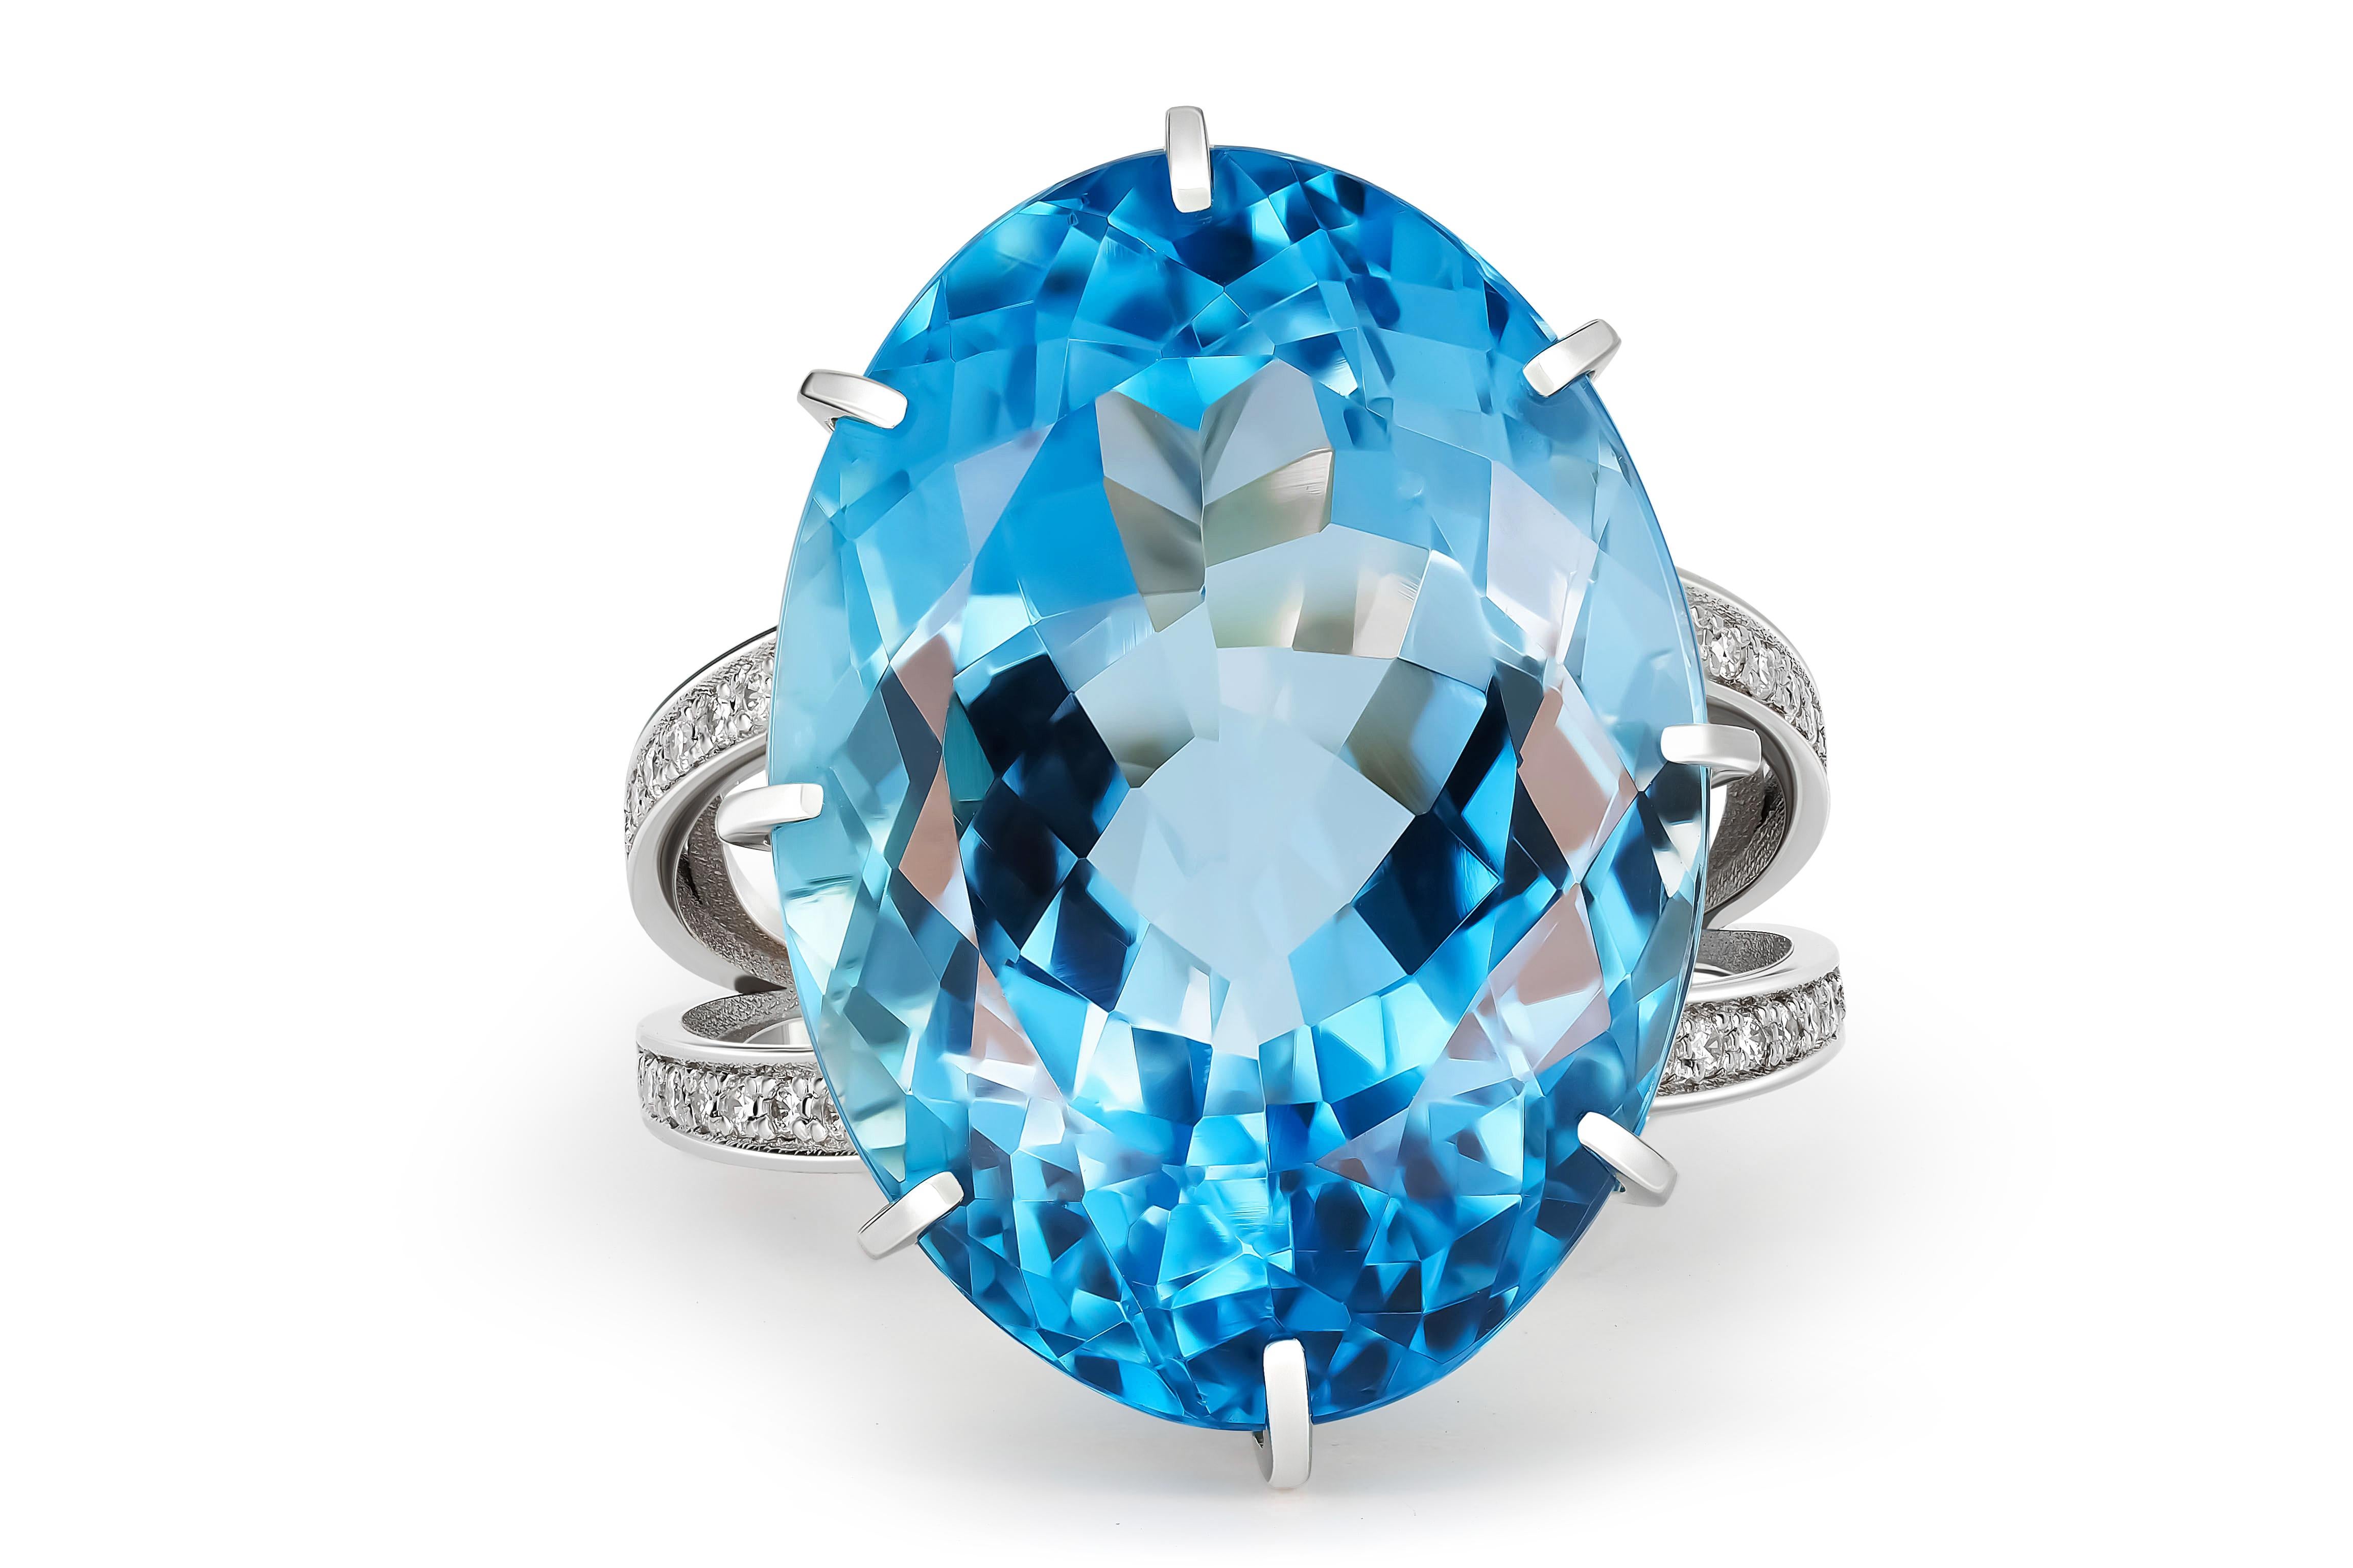 Bague massive avec topaze et diamants
Or 14 ct
Poids : 10,1 g.
Serti de topaze , couleur - bleu
Coupe ovale, environ 26 ct ( 21.5x15.5x 10.3 mm)
Clarté : Transparent avec inclusions
Autres pierres :
Diamants - taille ronde brillante, G/VS, 32 x